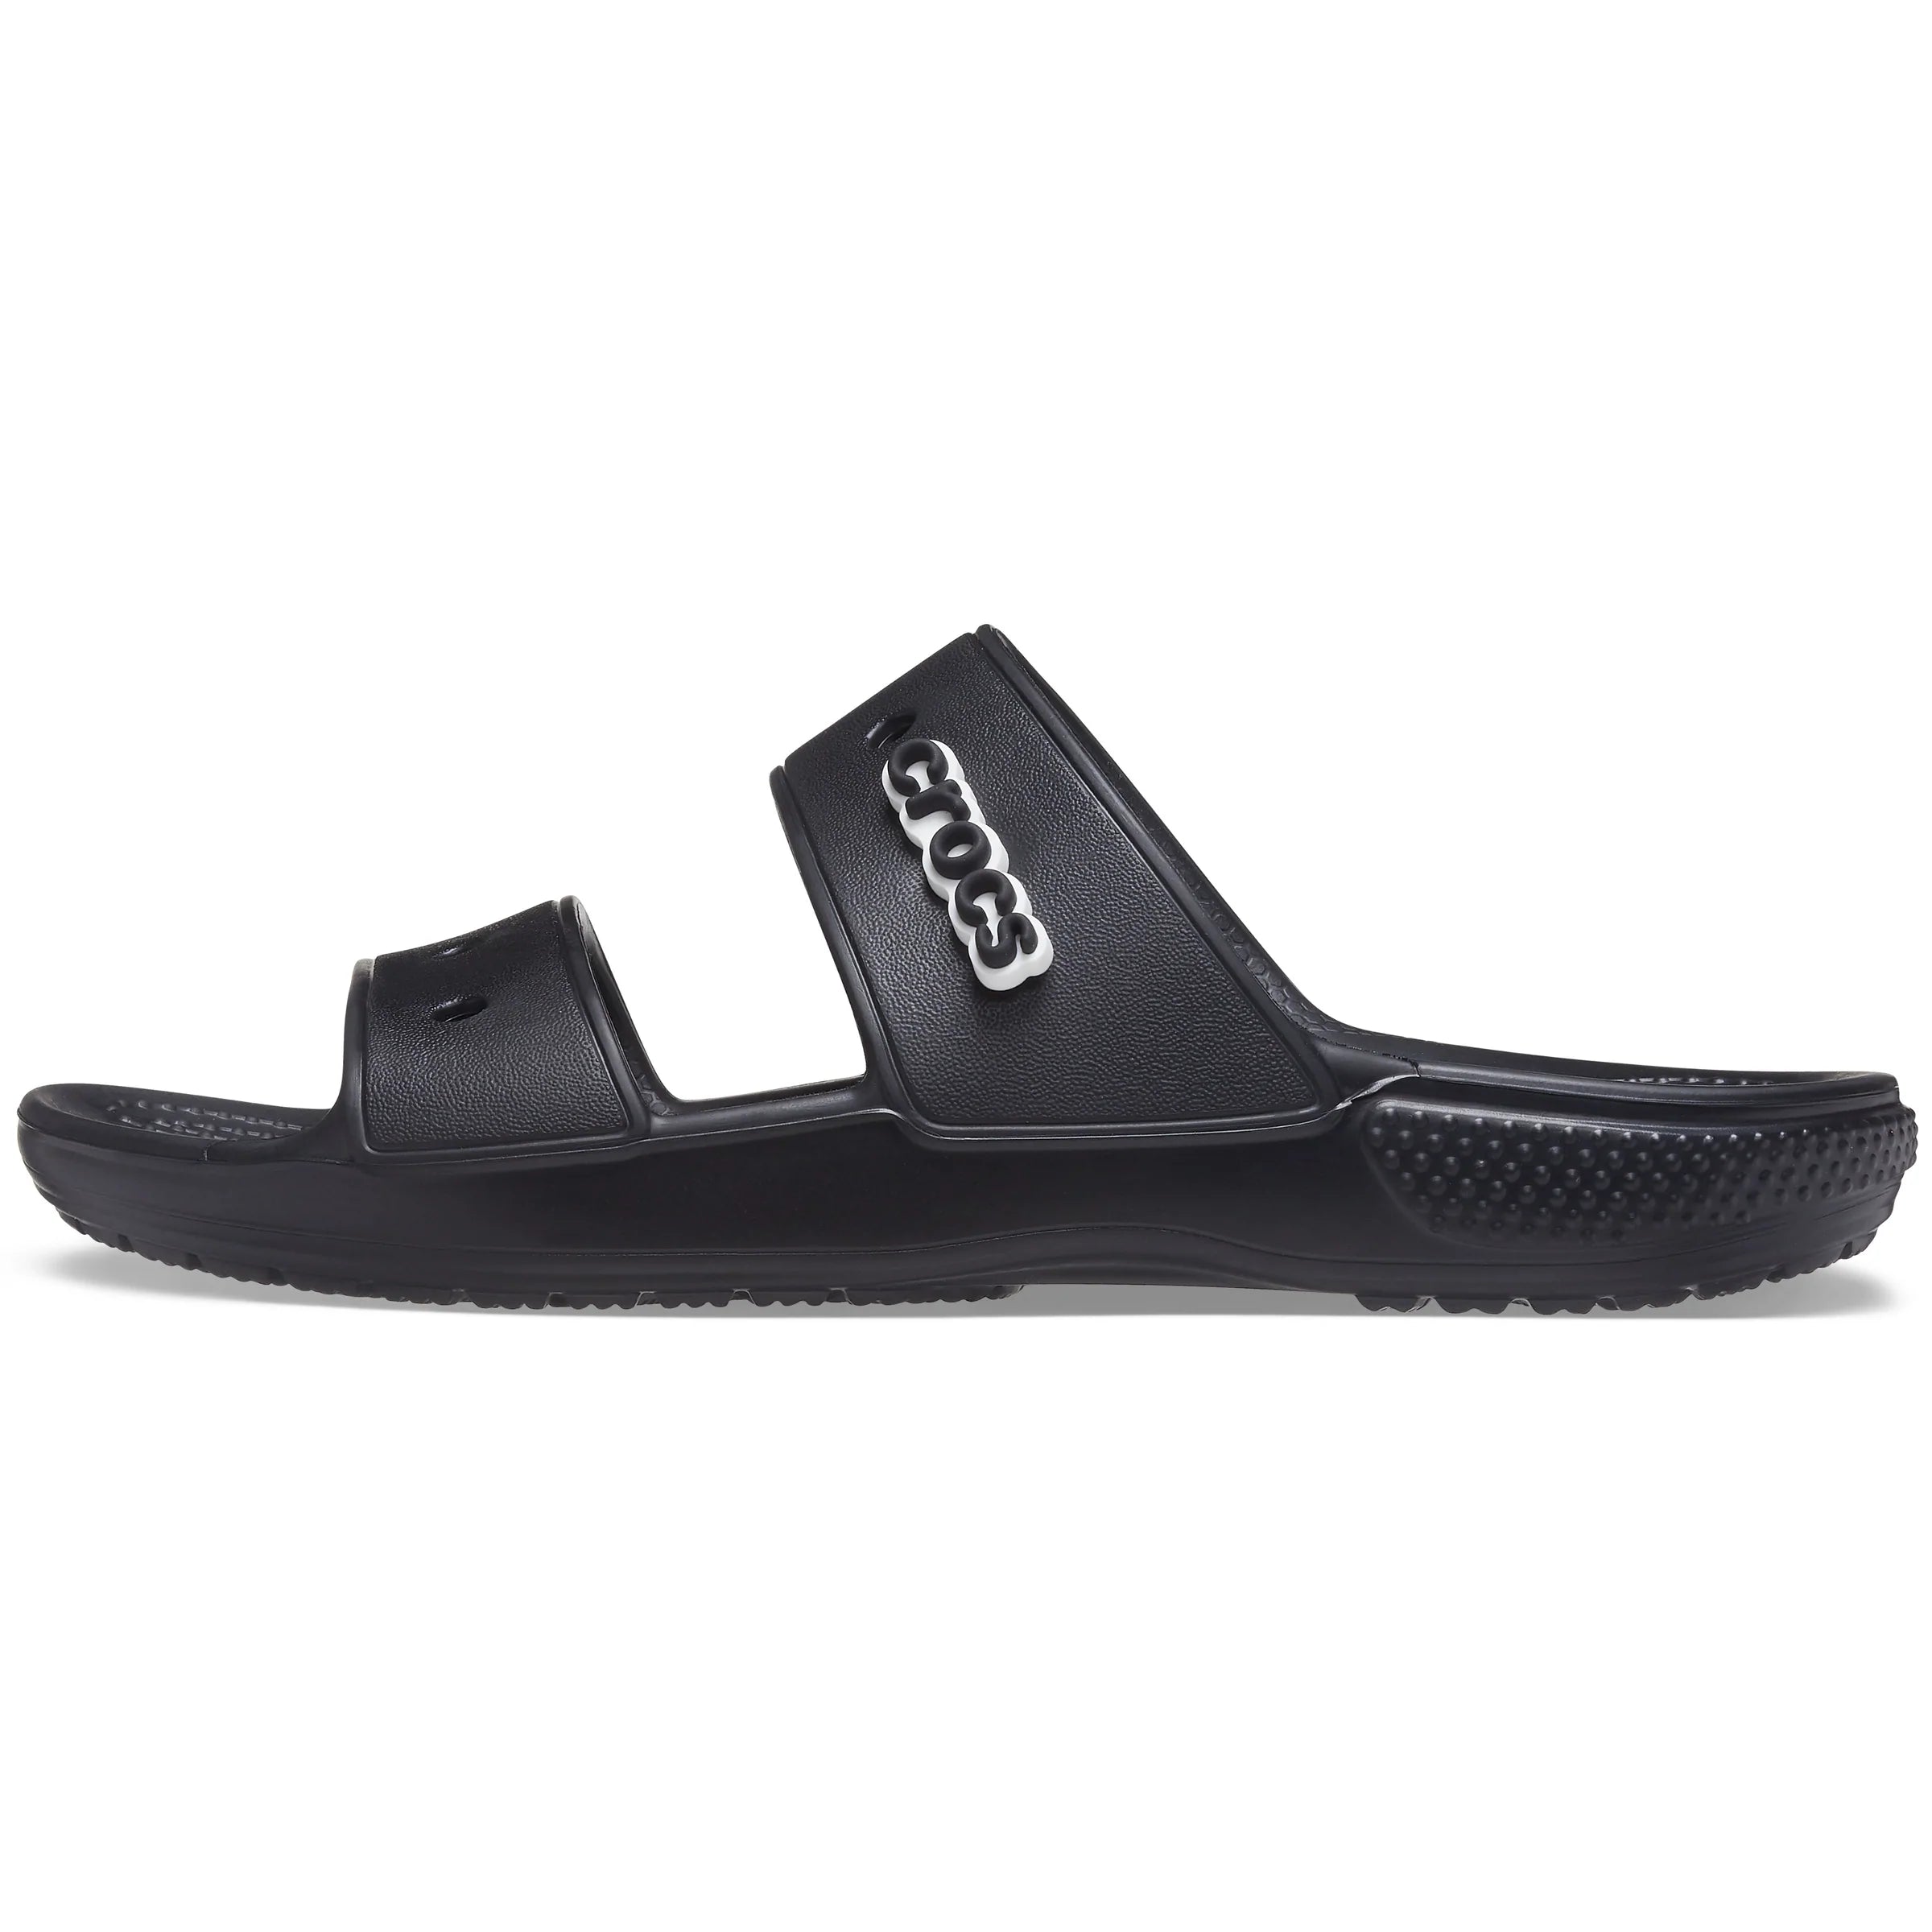 Classic Crocs Sandal - shoe&amp;me - Crocs - Slide - crocs, Sandals, Slides/Scuffs, Summer 22, Unisex